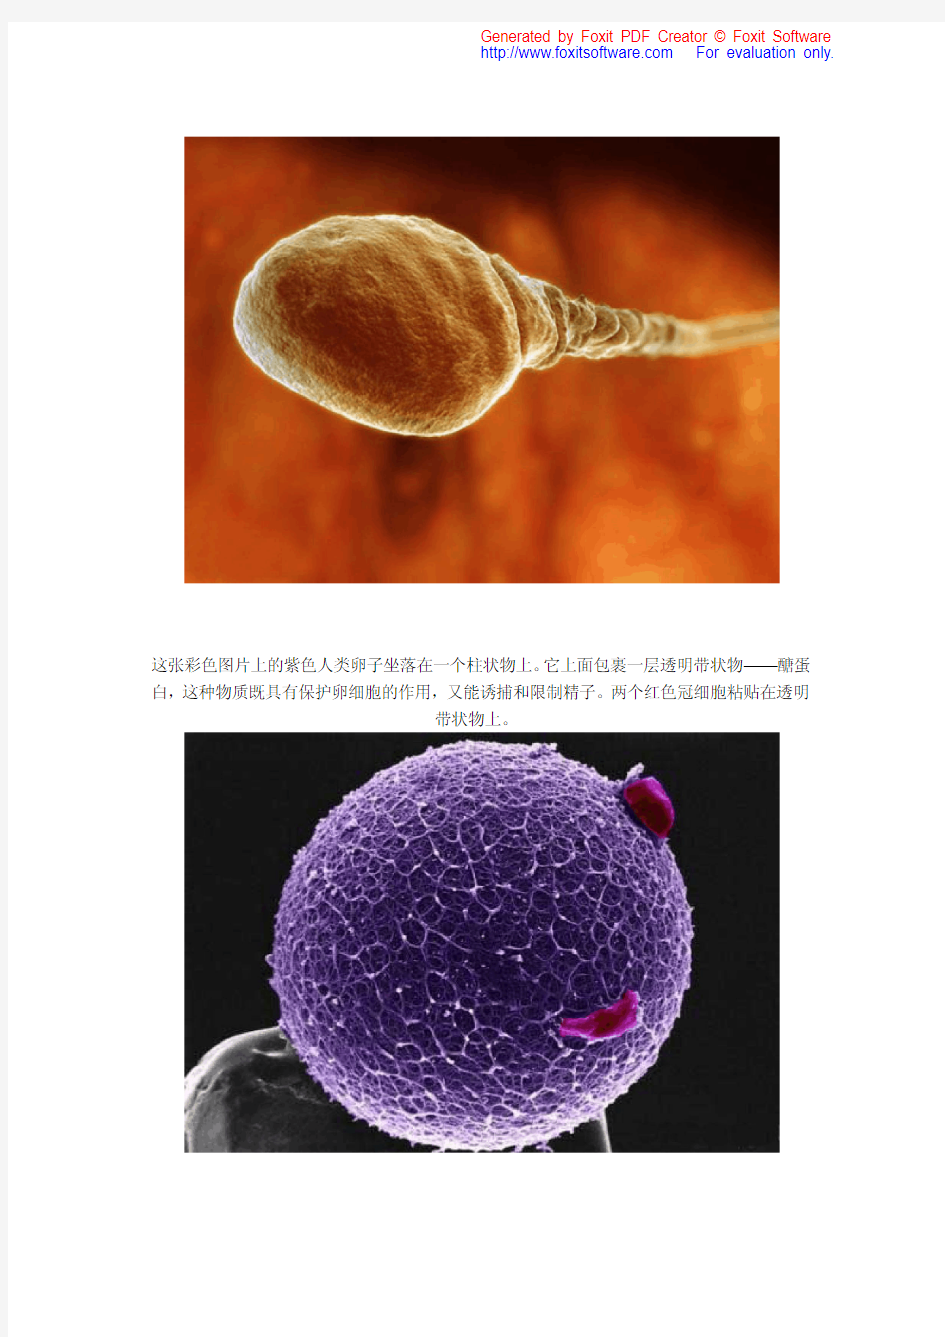 婴儿出生——一个精子发育成婴儿的全过程(目前最全的照片)